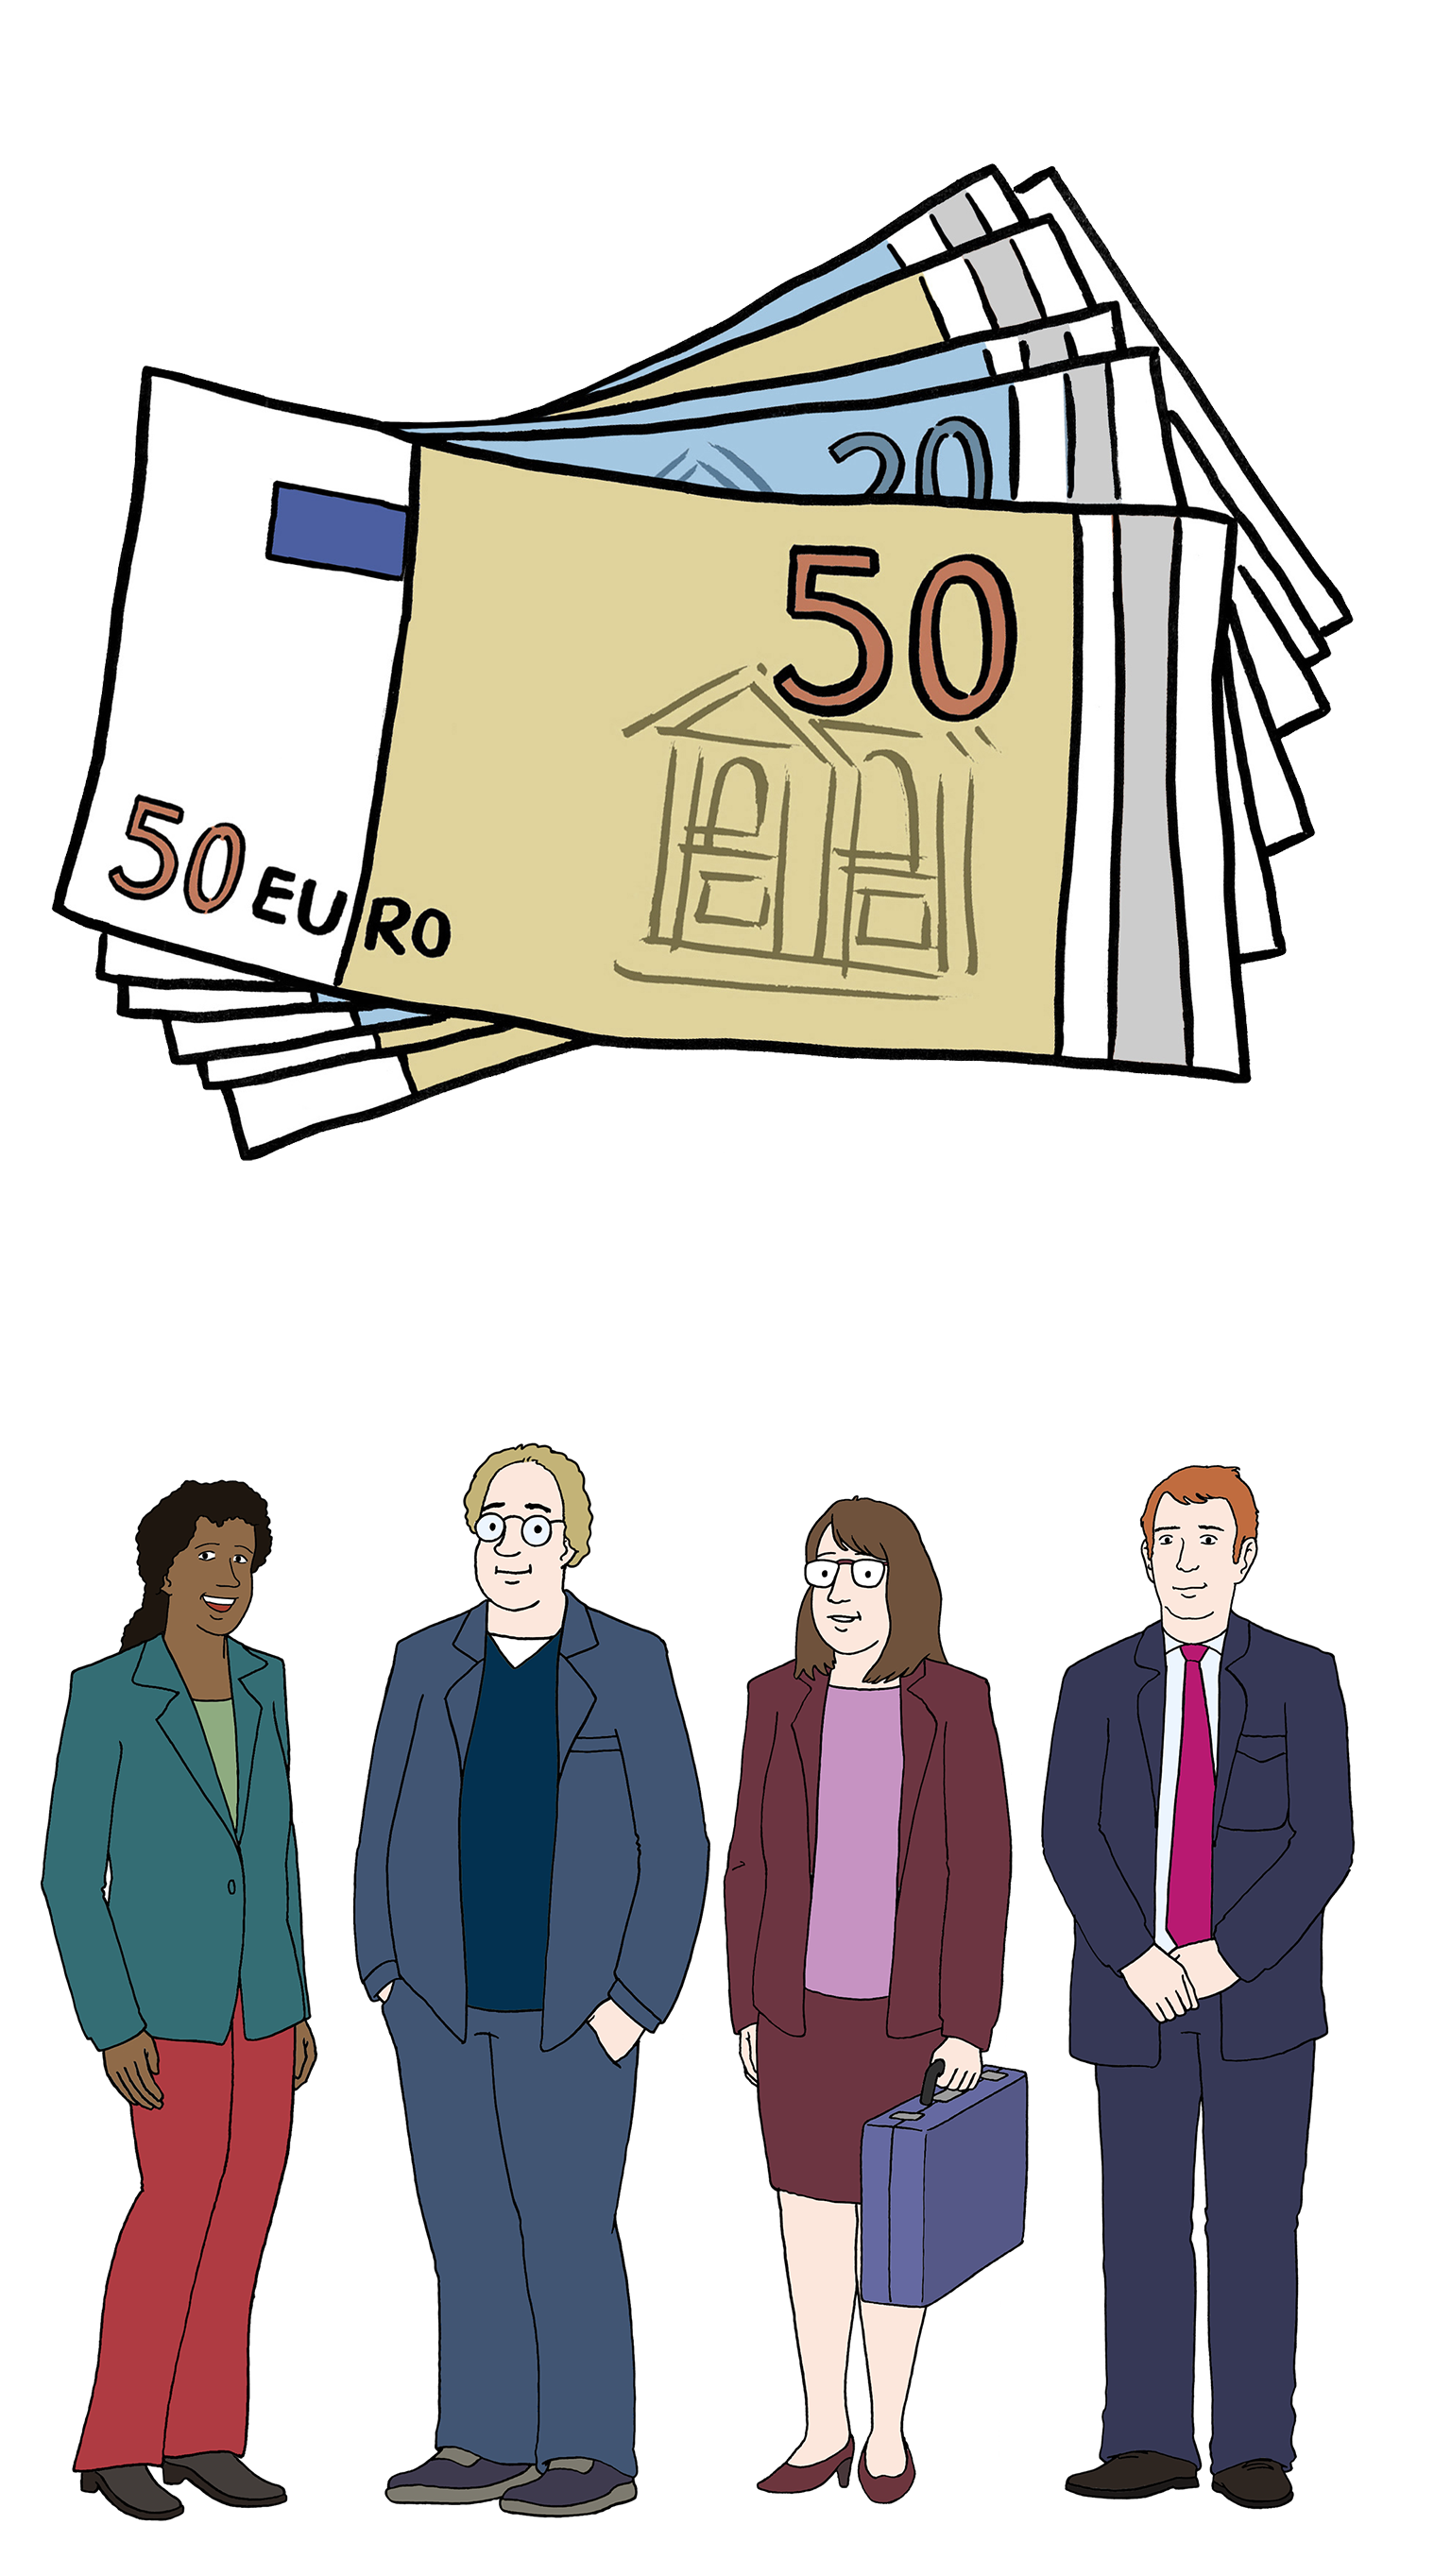 Abbildung von 2 Grafiken: Oben verschiedene Geldscheine. darunter stehen 4 Personen in Businesskleidung nebeneinander